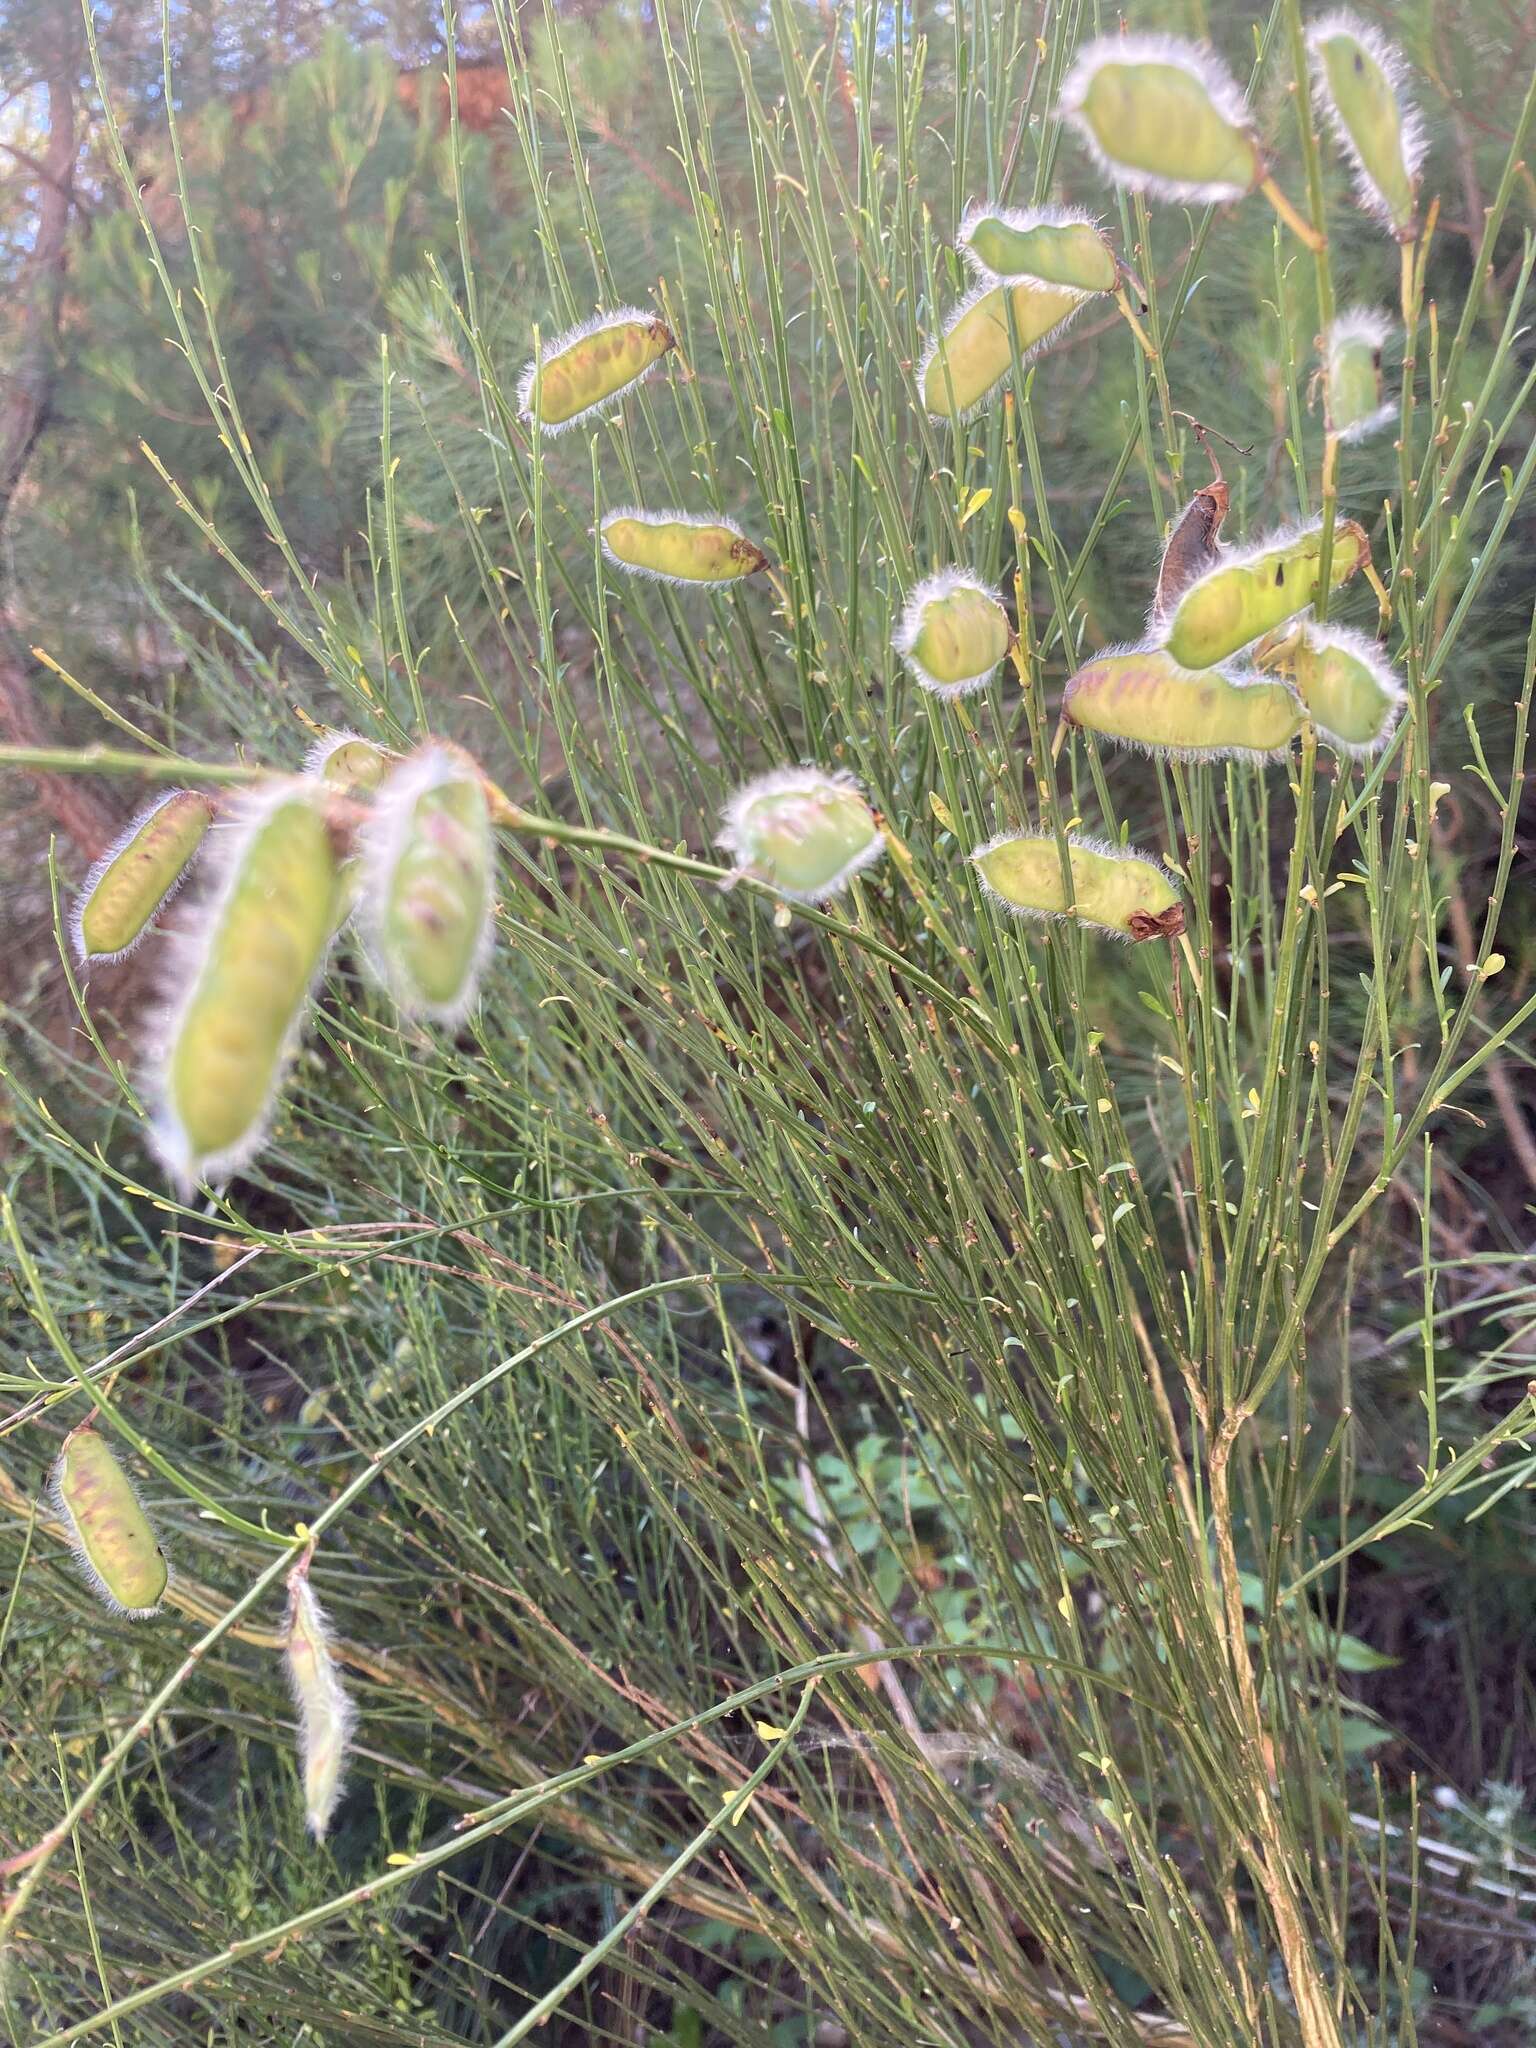 Image of <i>Cytisus scoparius</i> subsp. <i>reverchonii</i>